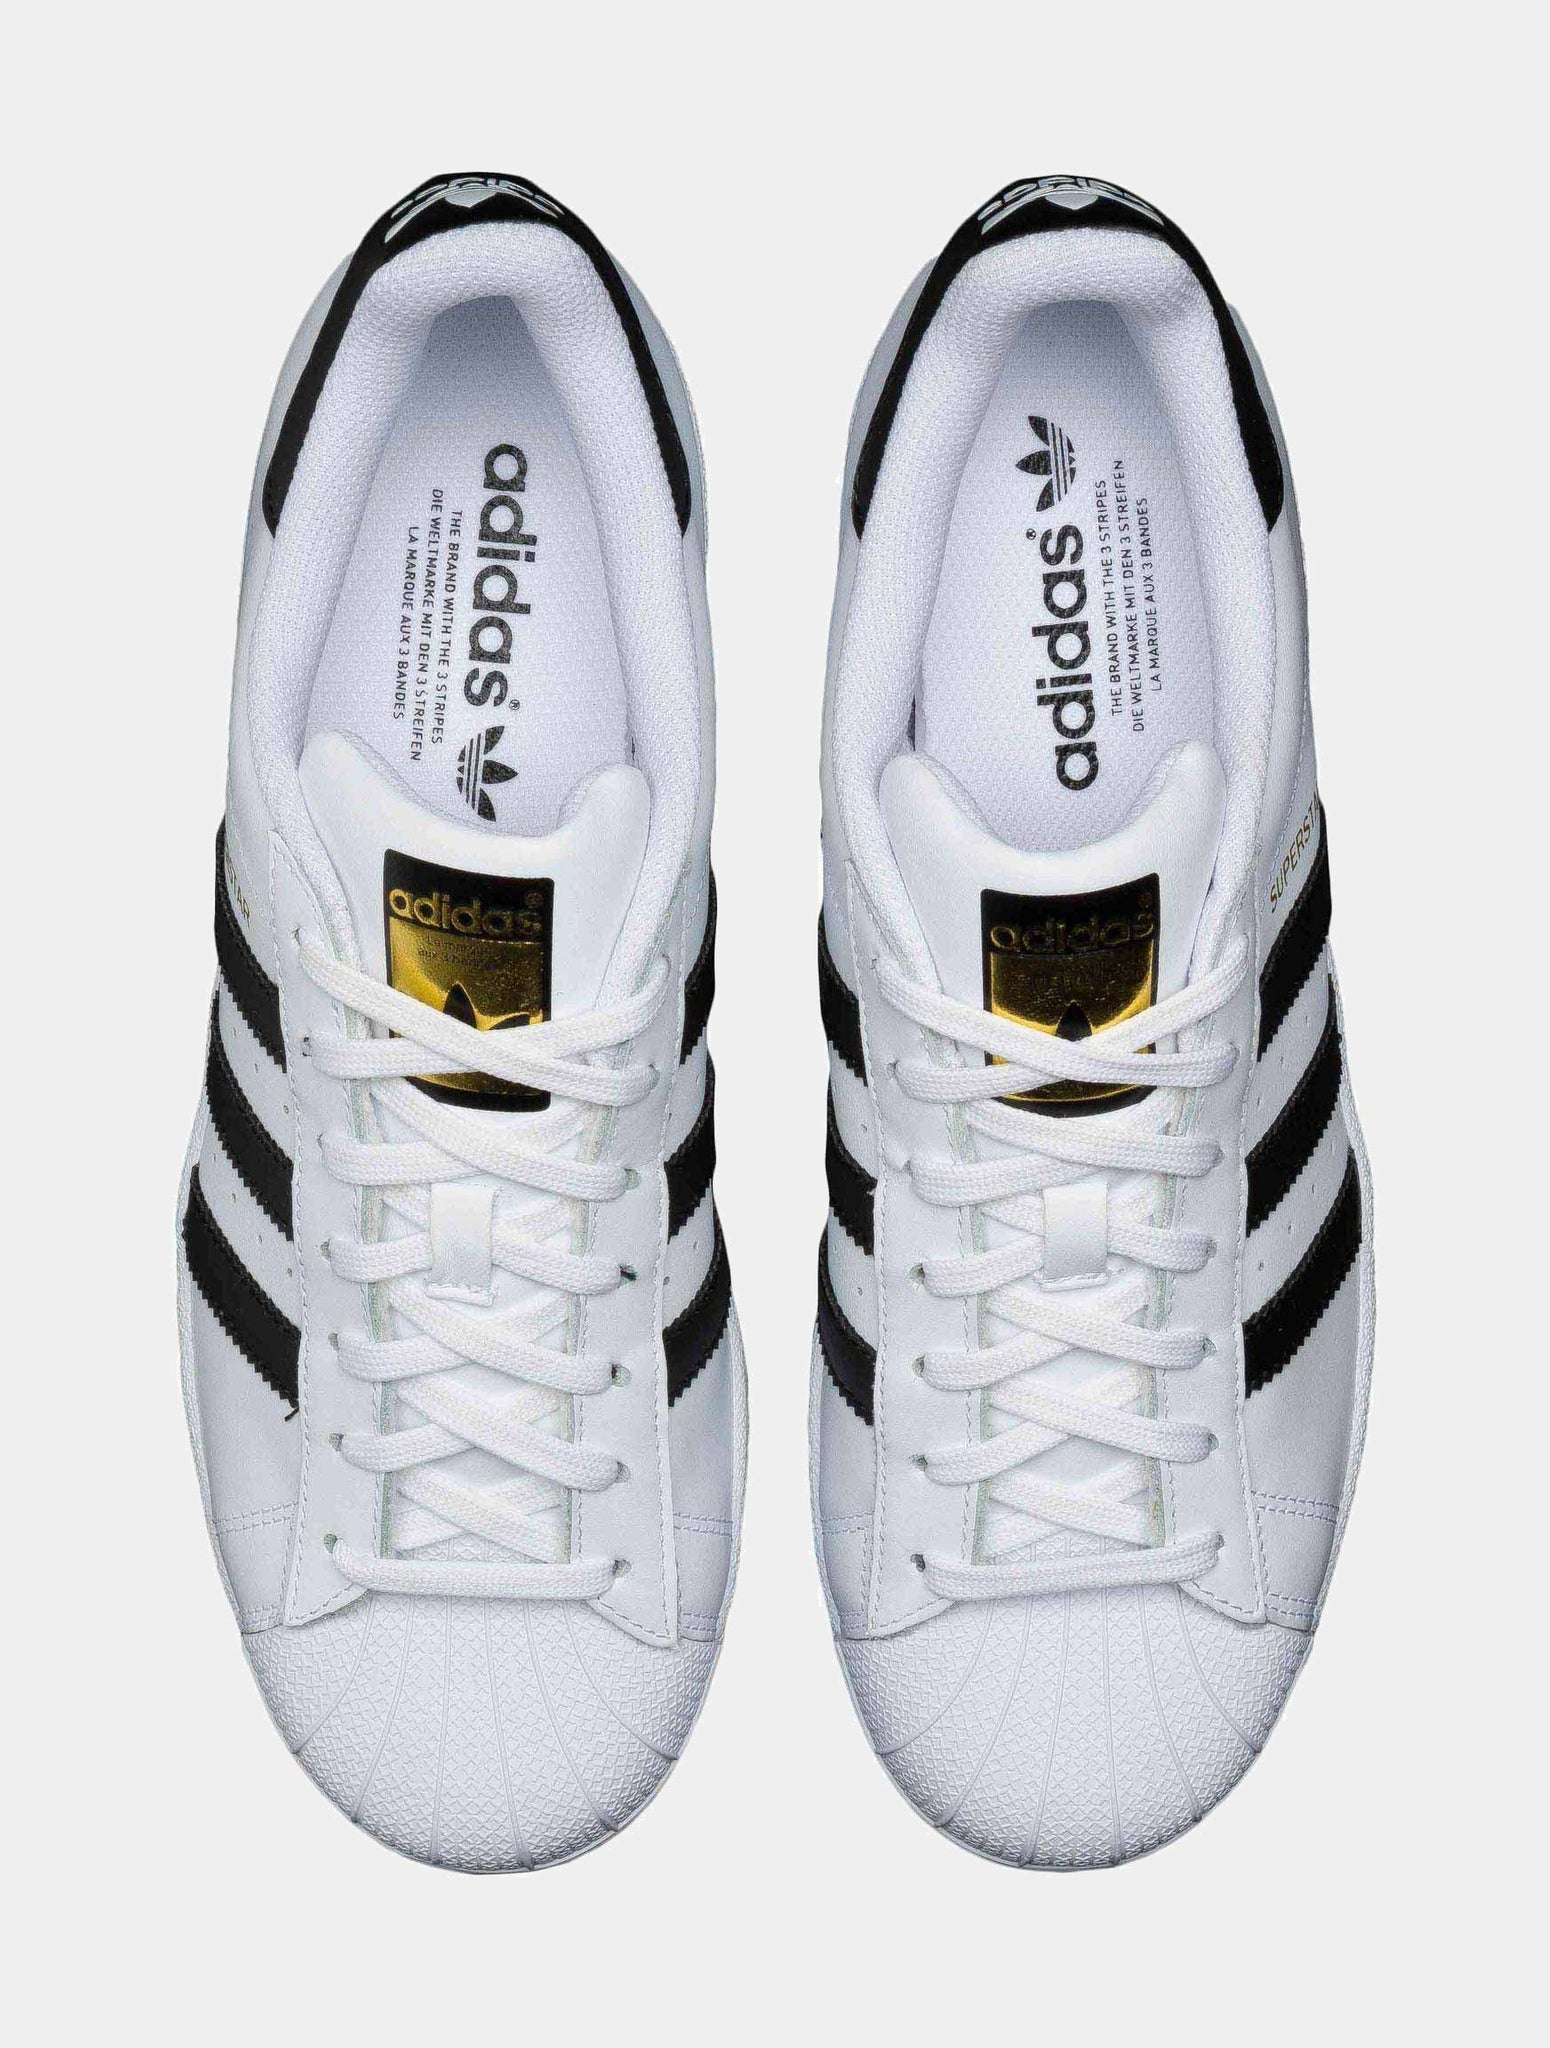 adidas Superstar 2 Original Foundation Shell Mens Lifestyle Shoe White Black C77124 – Shoe Palace